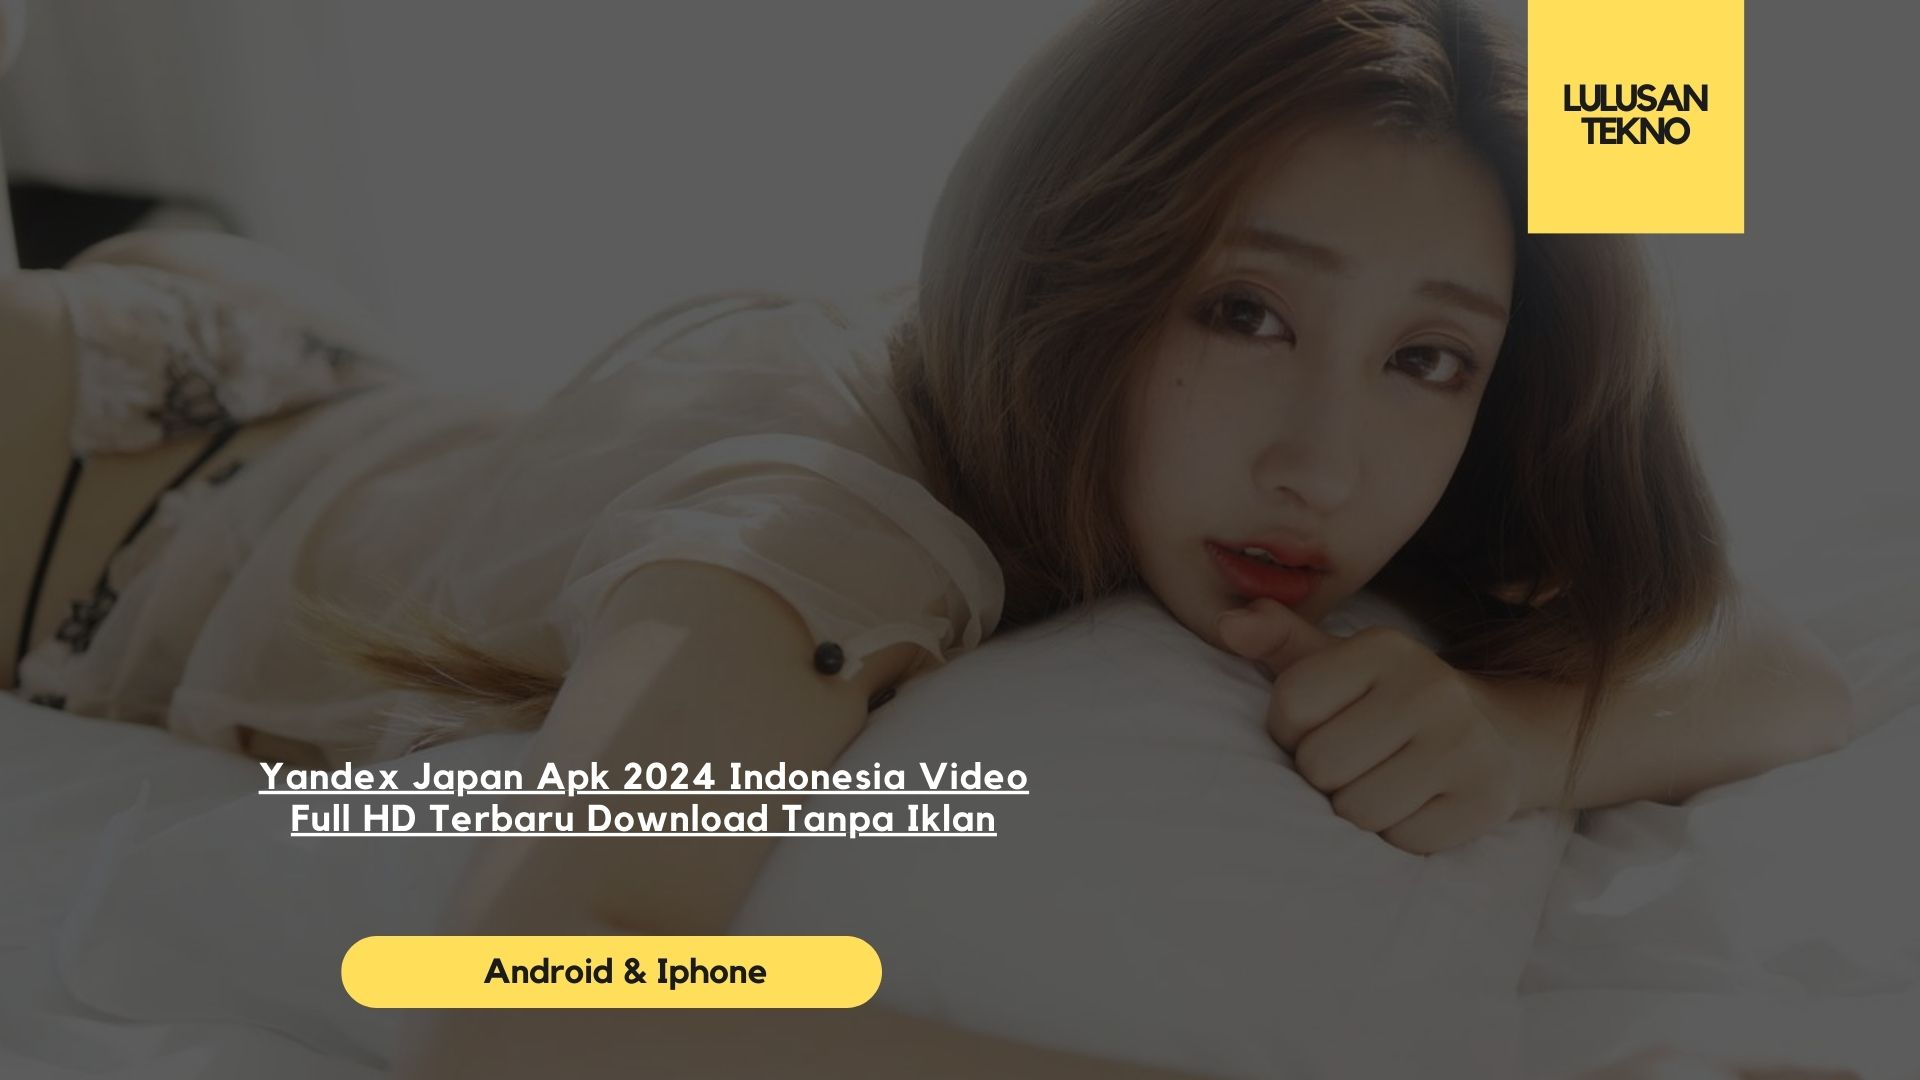 Yandex Japan Apk 2024 Indonesia Video Full HD Terbaru Download Tanpa Iklan